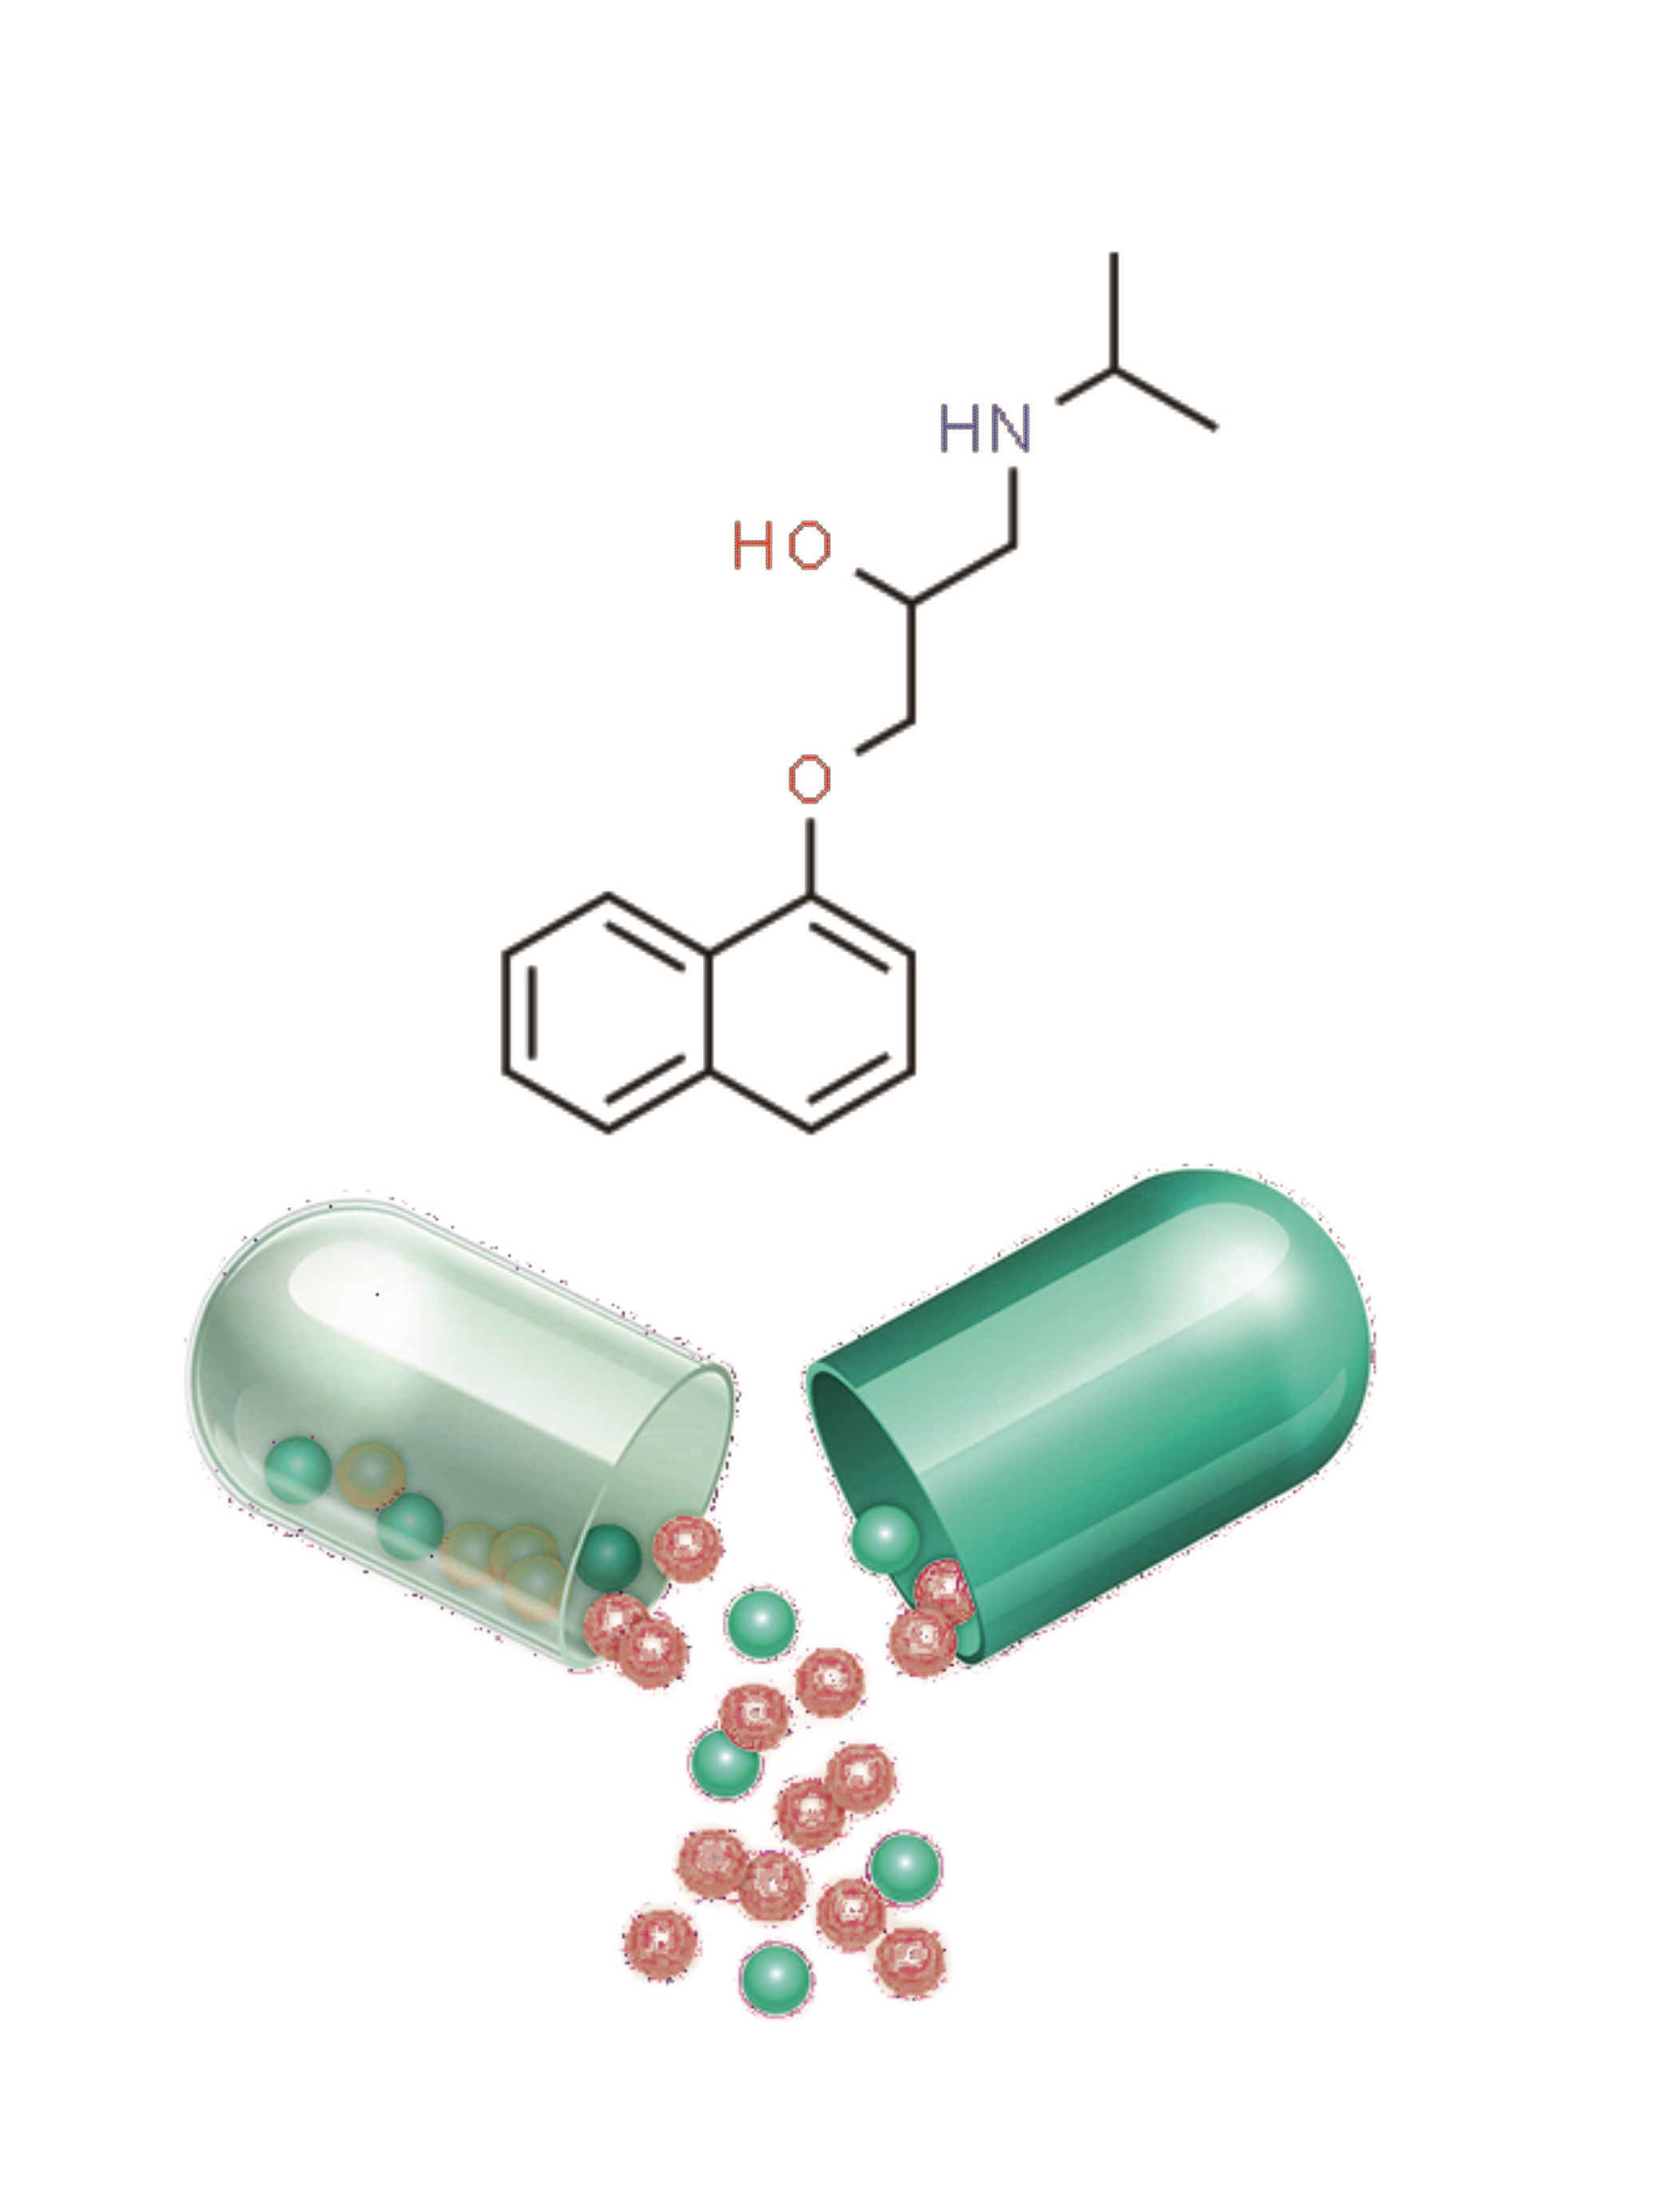 Propranolol Hydrochloride Pellets